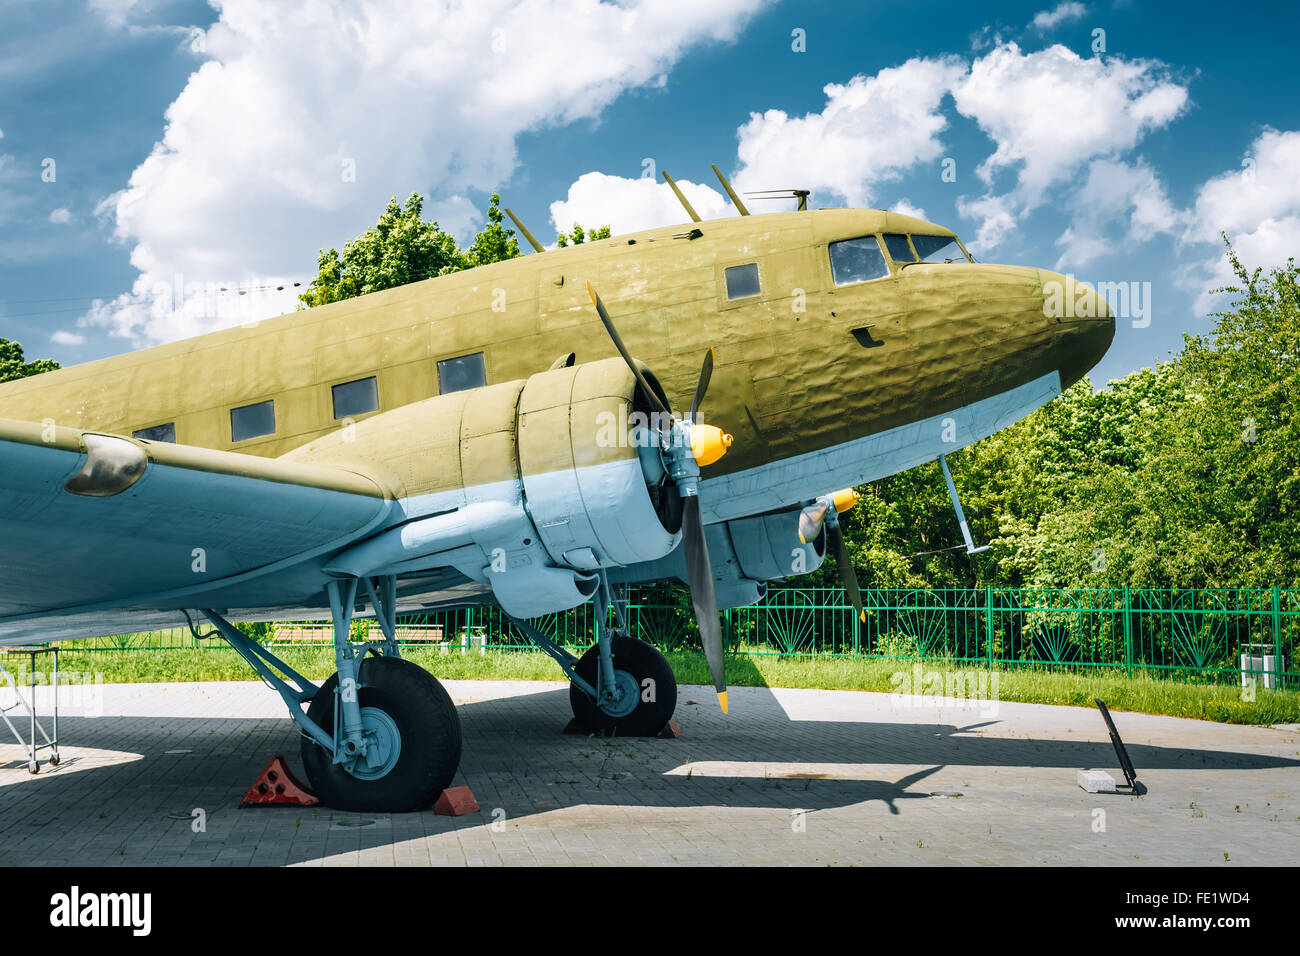 La pièce de l'avion considéré inactif Lisunov Li-2 de l'air soviétique situé au Musée de la Grande guerre patriotique de Biélorussie, Minsk. Banque D'Images